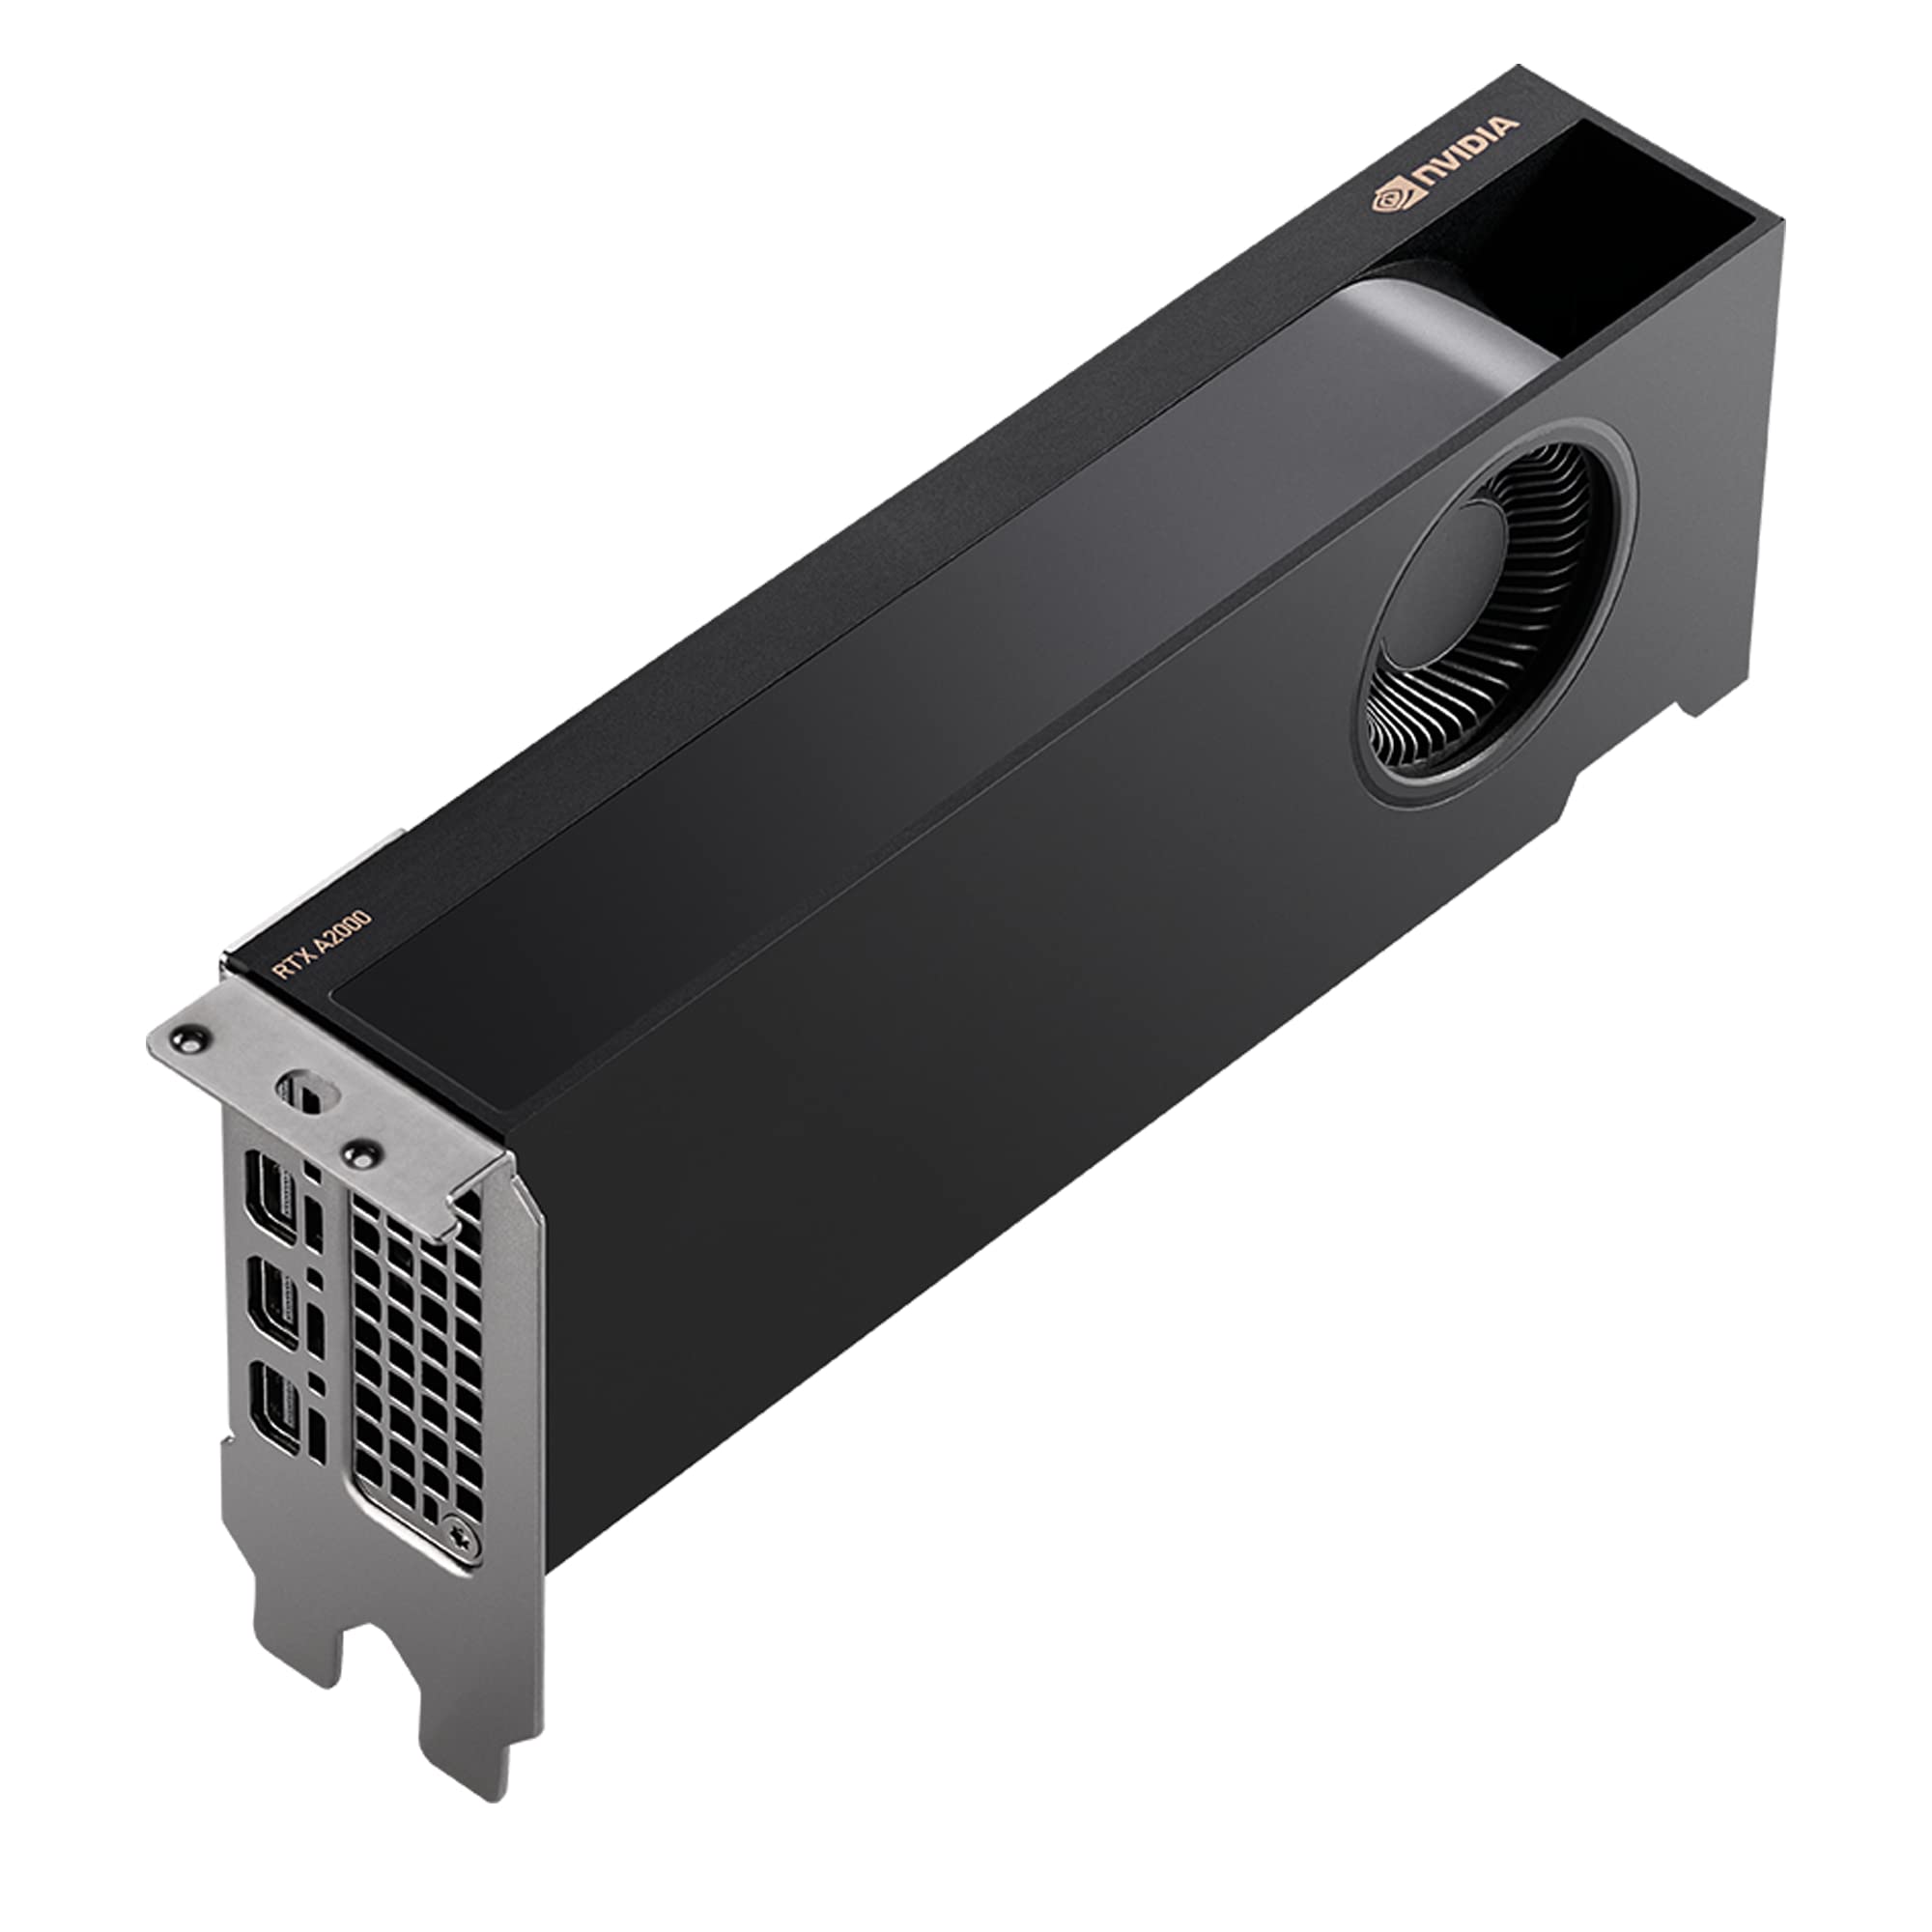 PNY Quadro RTX A2000 Professional Graphic Card 6GB GDDR6, PCI Express 4.0 x16, Dual Slot, 4x MiniDisplayPort, 8K Support, Ultra-quiet active fan (Renewed)